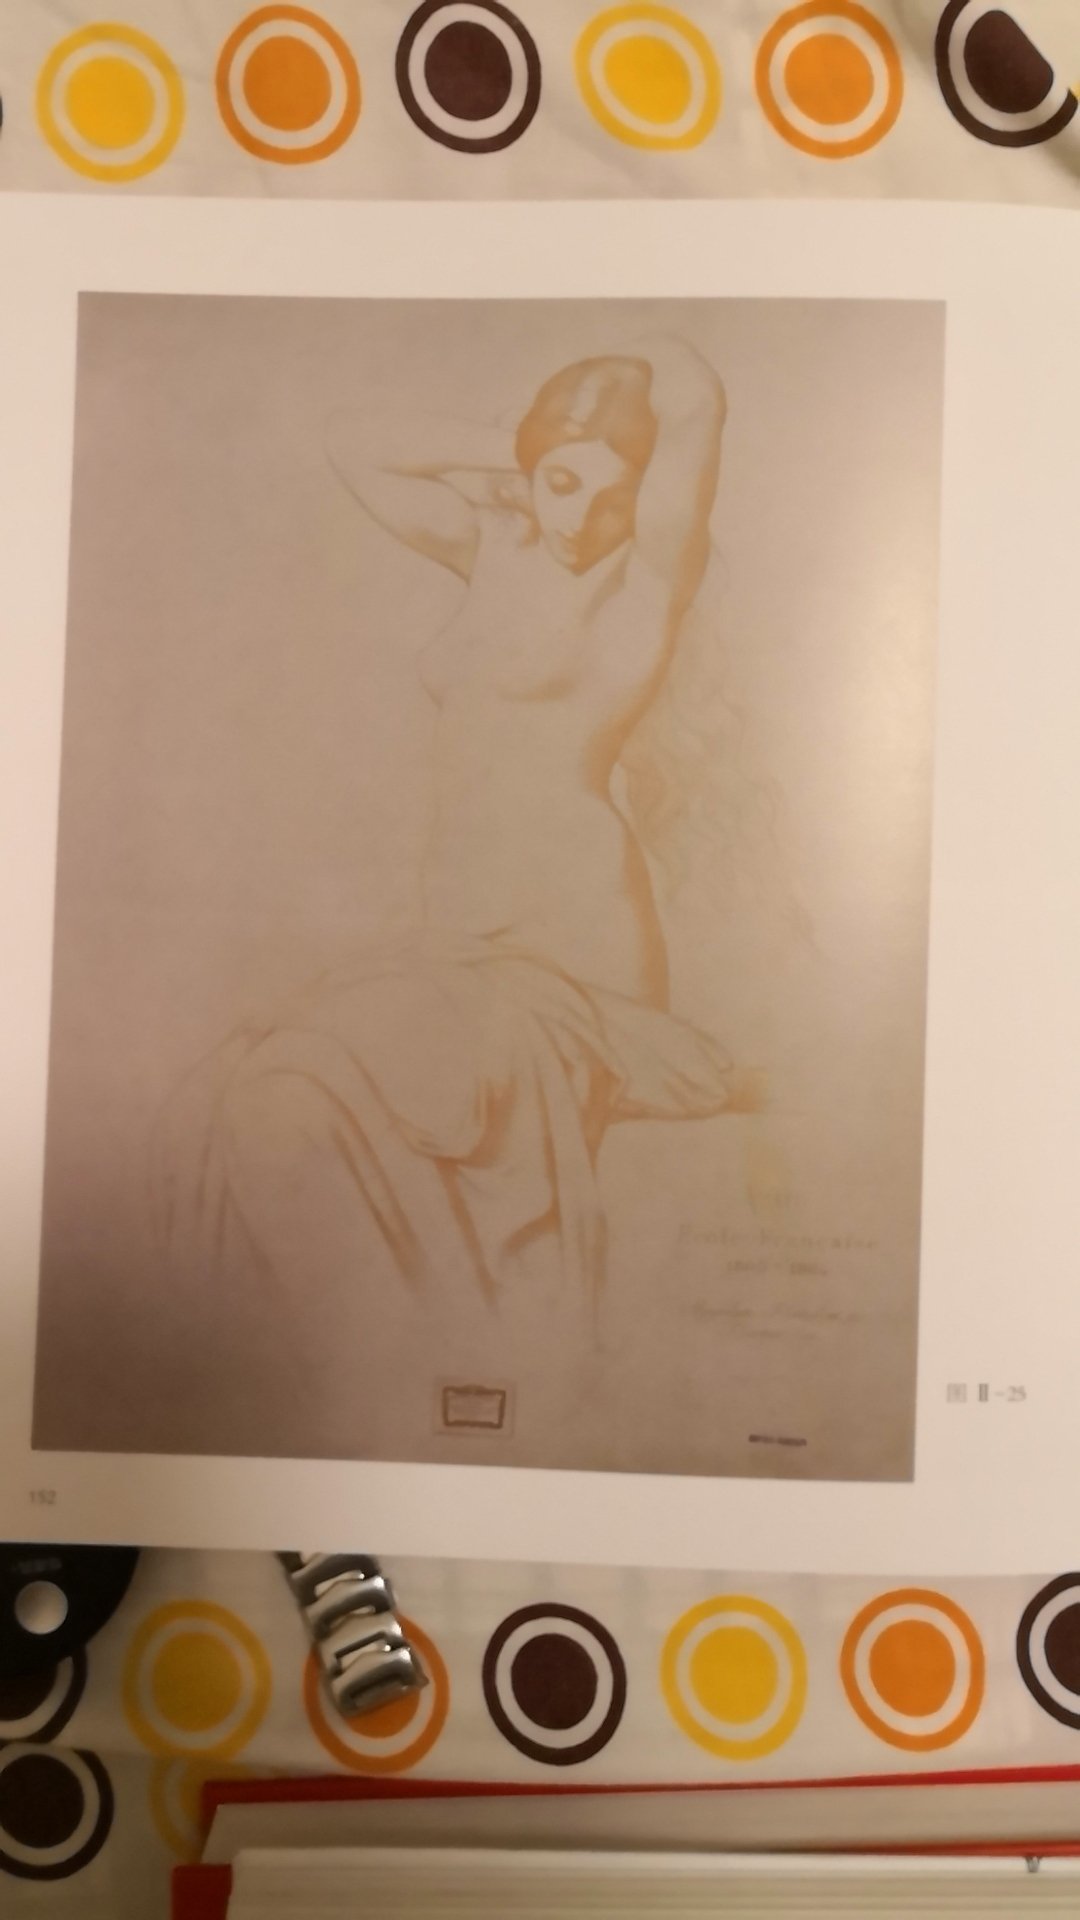 　　　《巴尔格素描教程》完整重印了查尔斯&middot;巴尔格和让-莱昂&middot;杰罗姆于19世纪60至70年代在巴黎出版的名著——《素描教程》（Coursde Dessin）。之后的半个世纪，这套由近200幅印刷品组成的教程成为了世界各地艺术学生在接触真人模特写生之前学习素描的优良之选。书中图片曾广泛用于世界各地的艺术学院，通称为“巴尔格图片”。文森特&middot;凡高曾两次独立临摹完本教程；毕加索在巴塞罗那美术学院